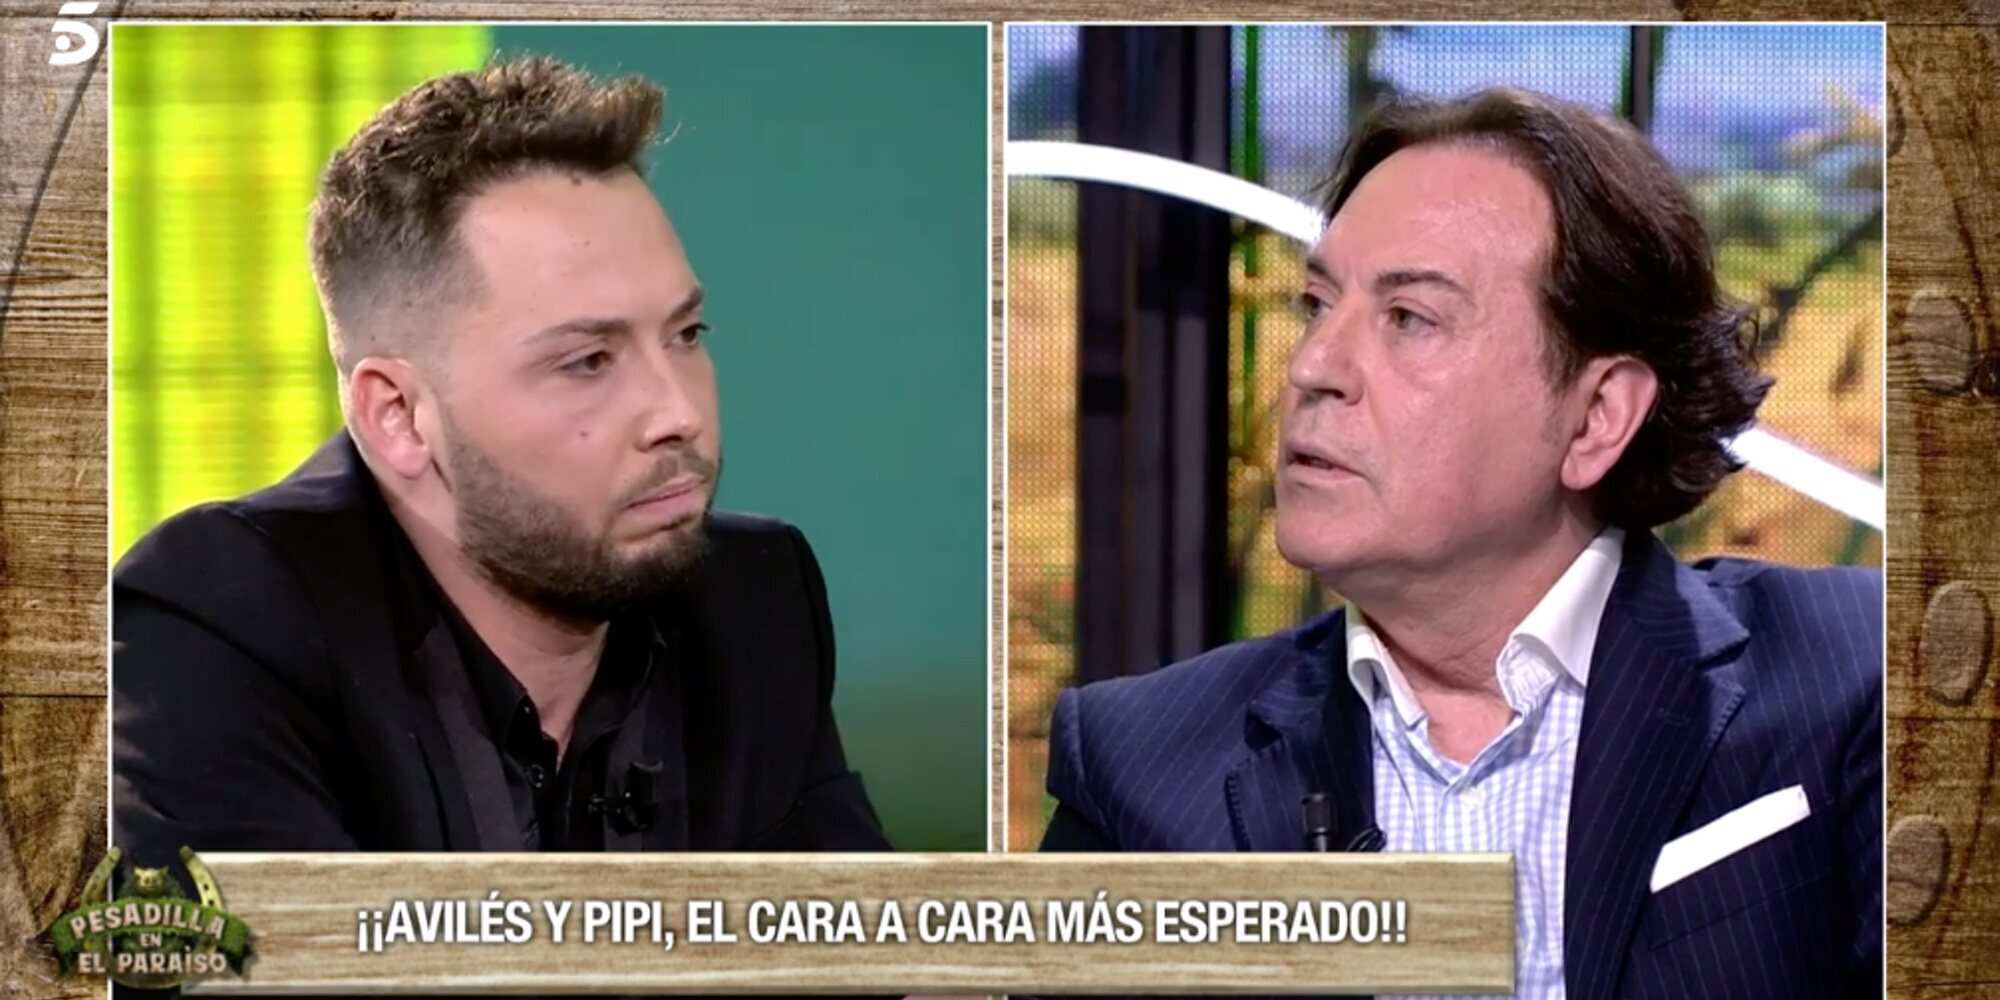 El cara a cara entre de José Antonio Avilés y Pipi Estrada: "Entre Terelu Campos y tú existía un acuerdo"